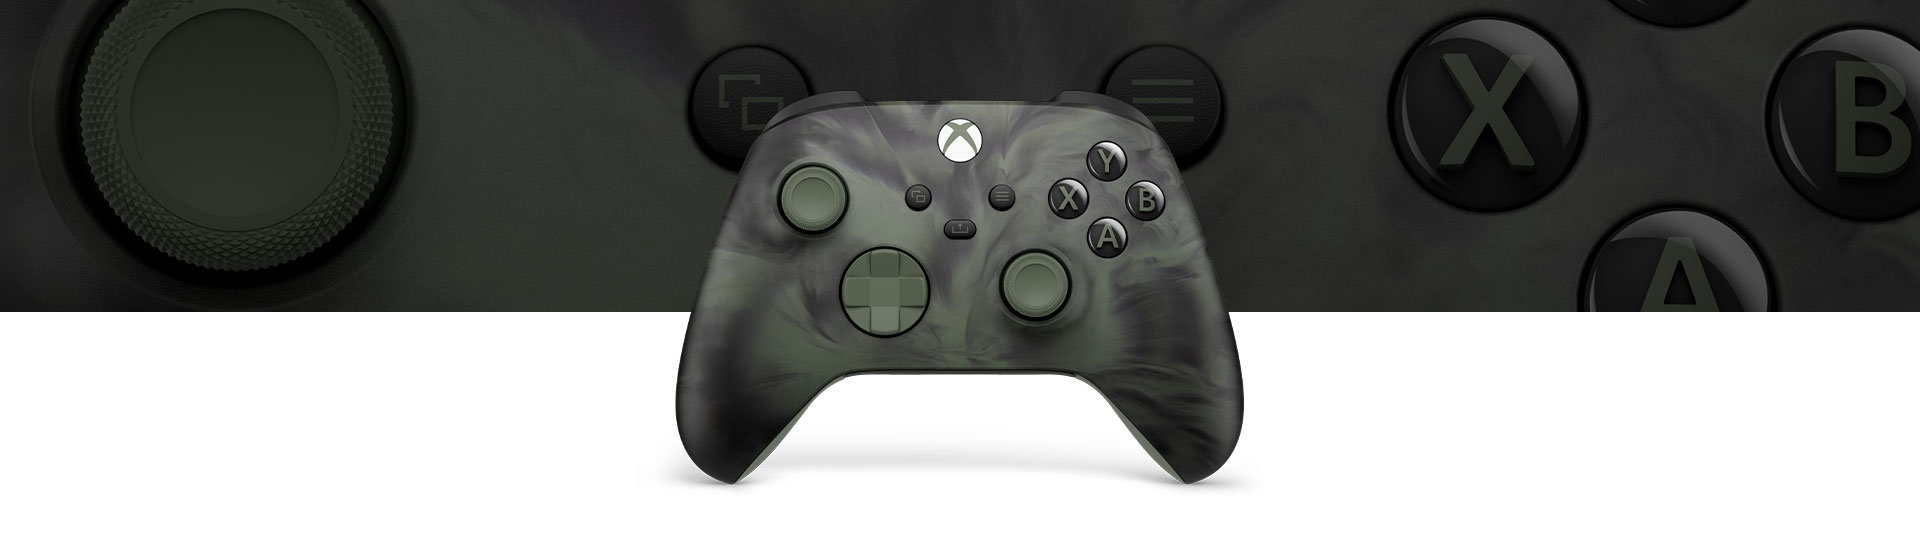 Vista frontal del Mando inalámbrico Xbox: Nocturnal Vapor Special Edition con una vista de primer plano en el fondo.